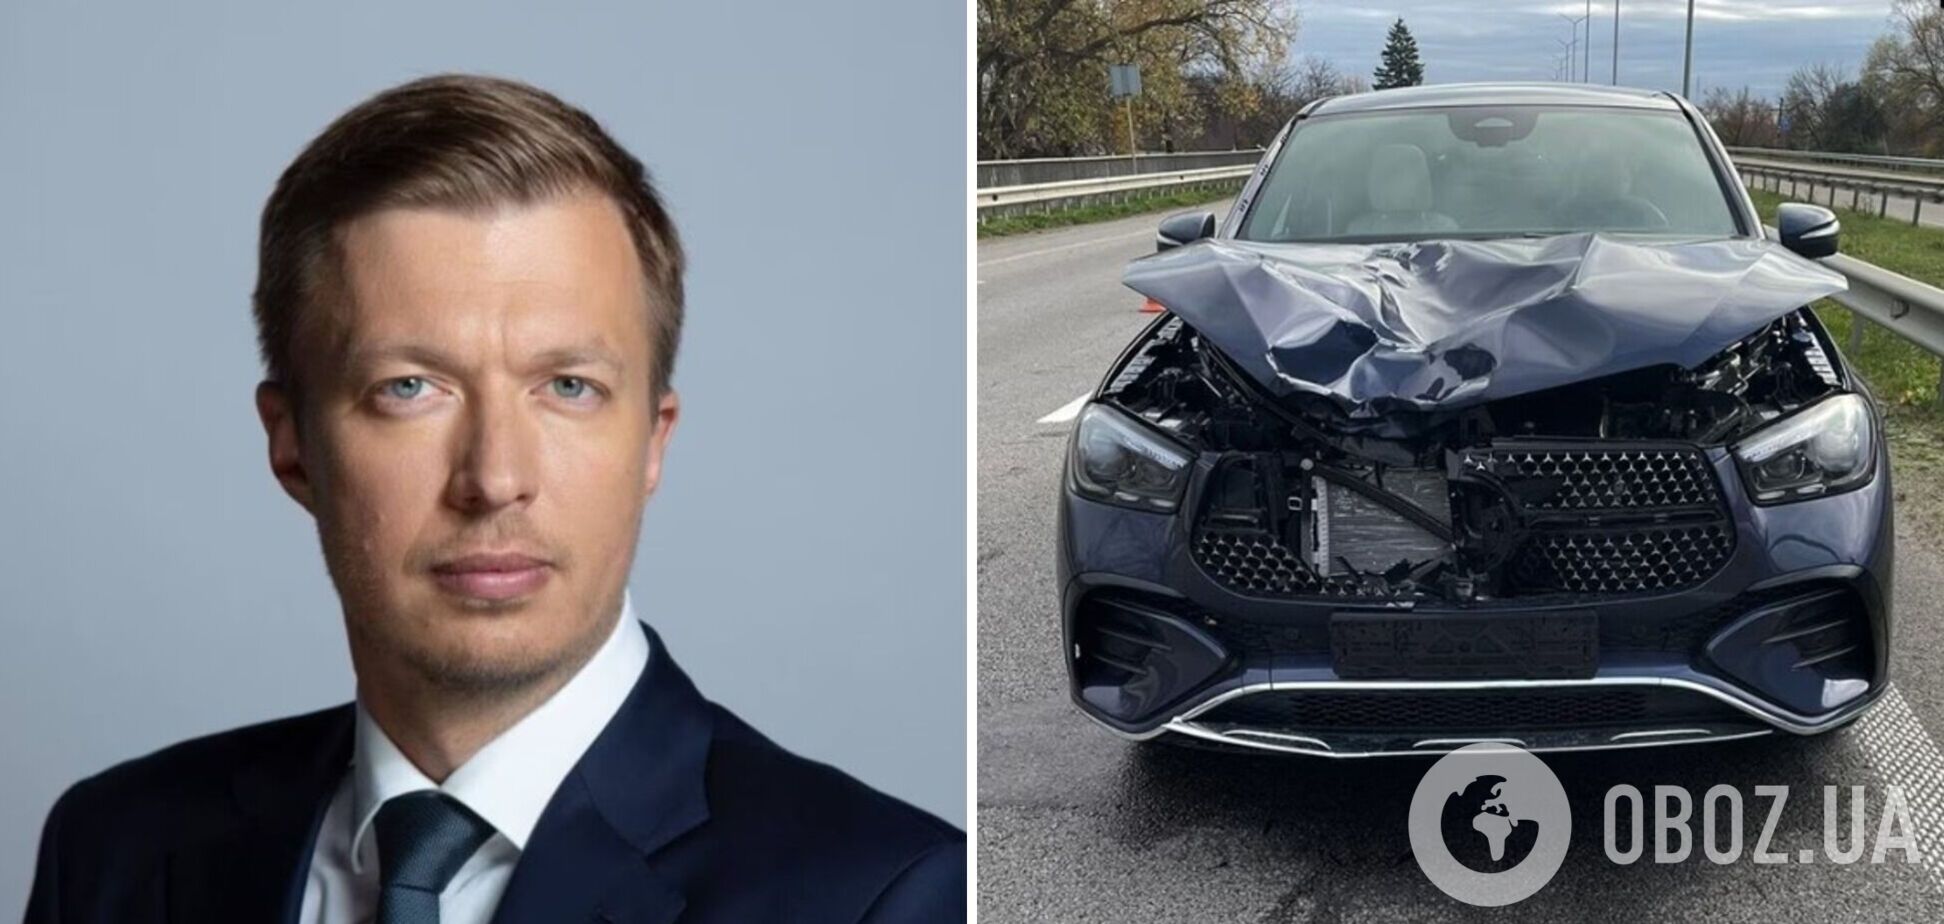 Незадолго до смертельного ДТП нардеп Николаенко получил штраф за превышение скорости: ехал 162 км/ч